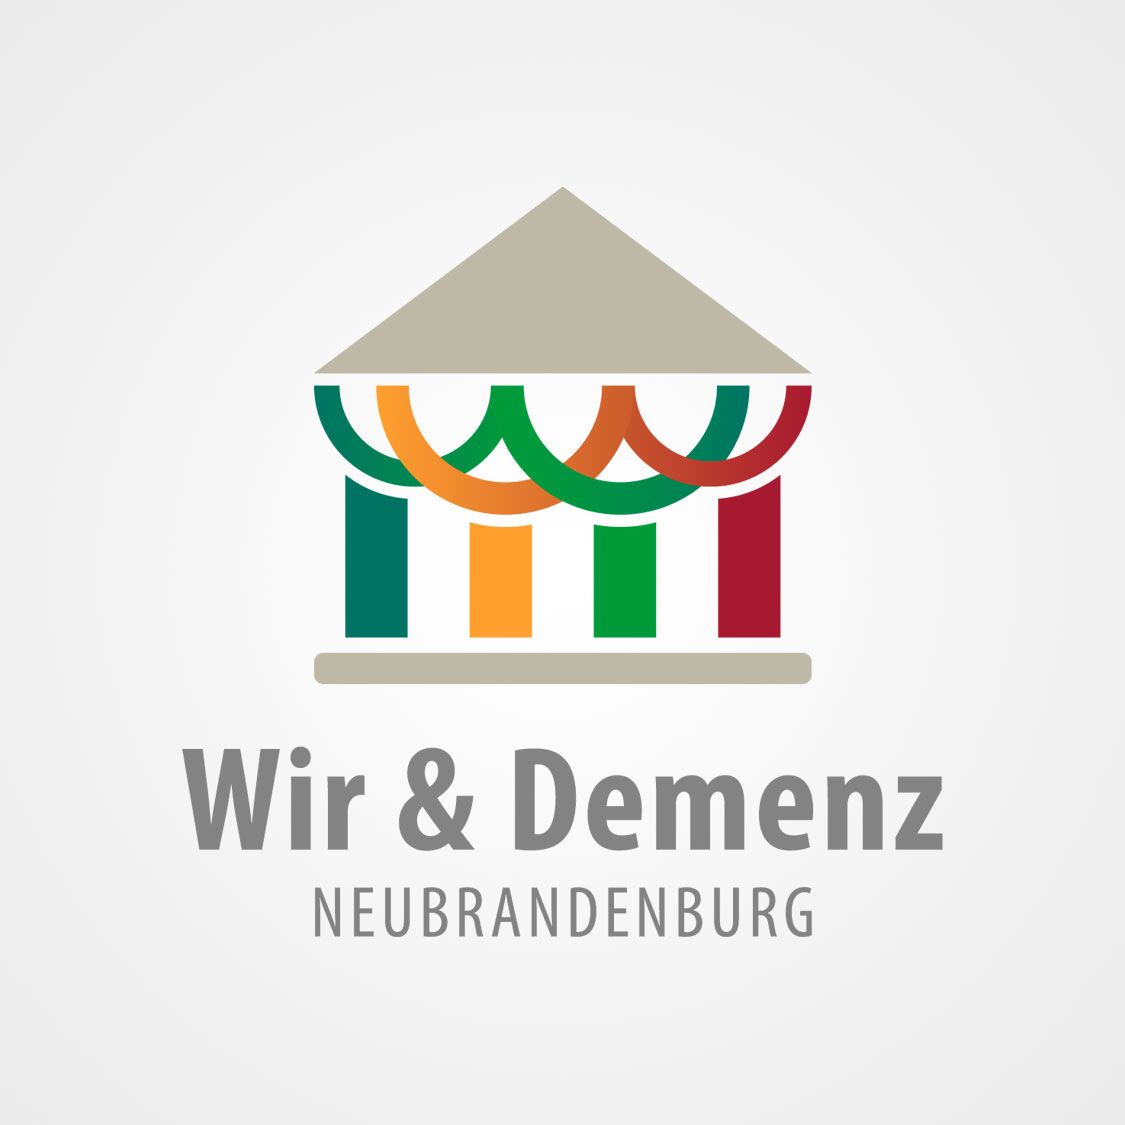 Darstellung des neuen Logos für das Netzwerk "Wir & Demenz Neubrandenburg"